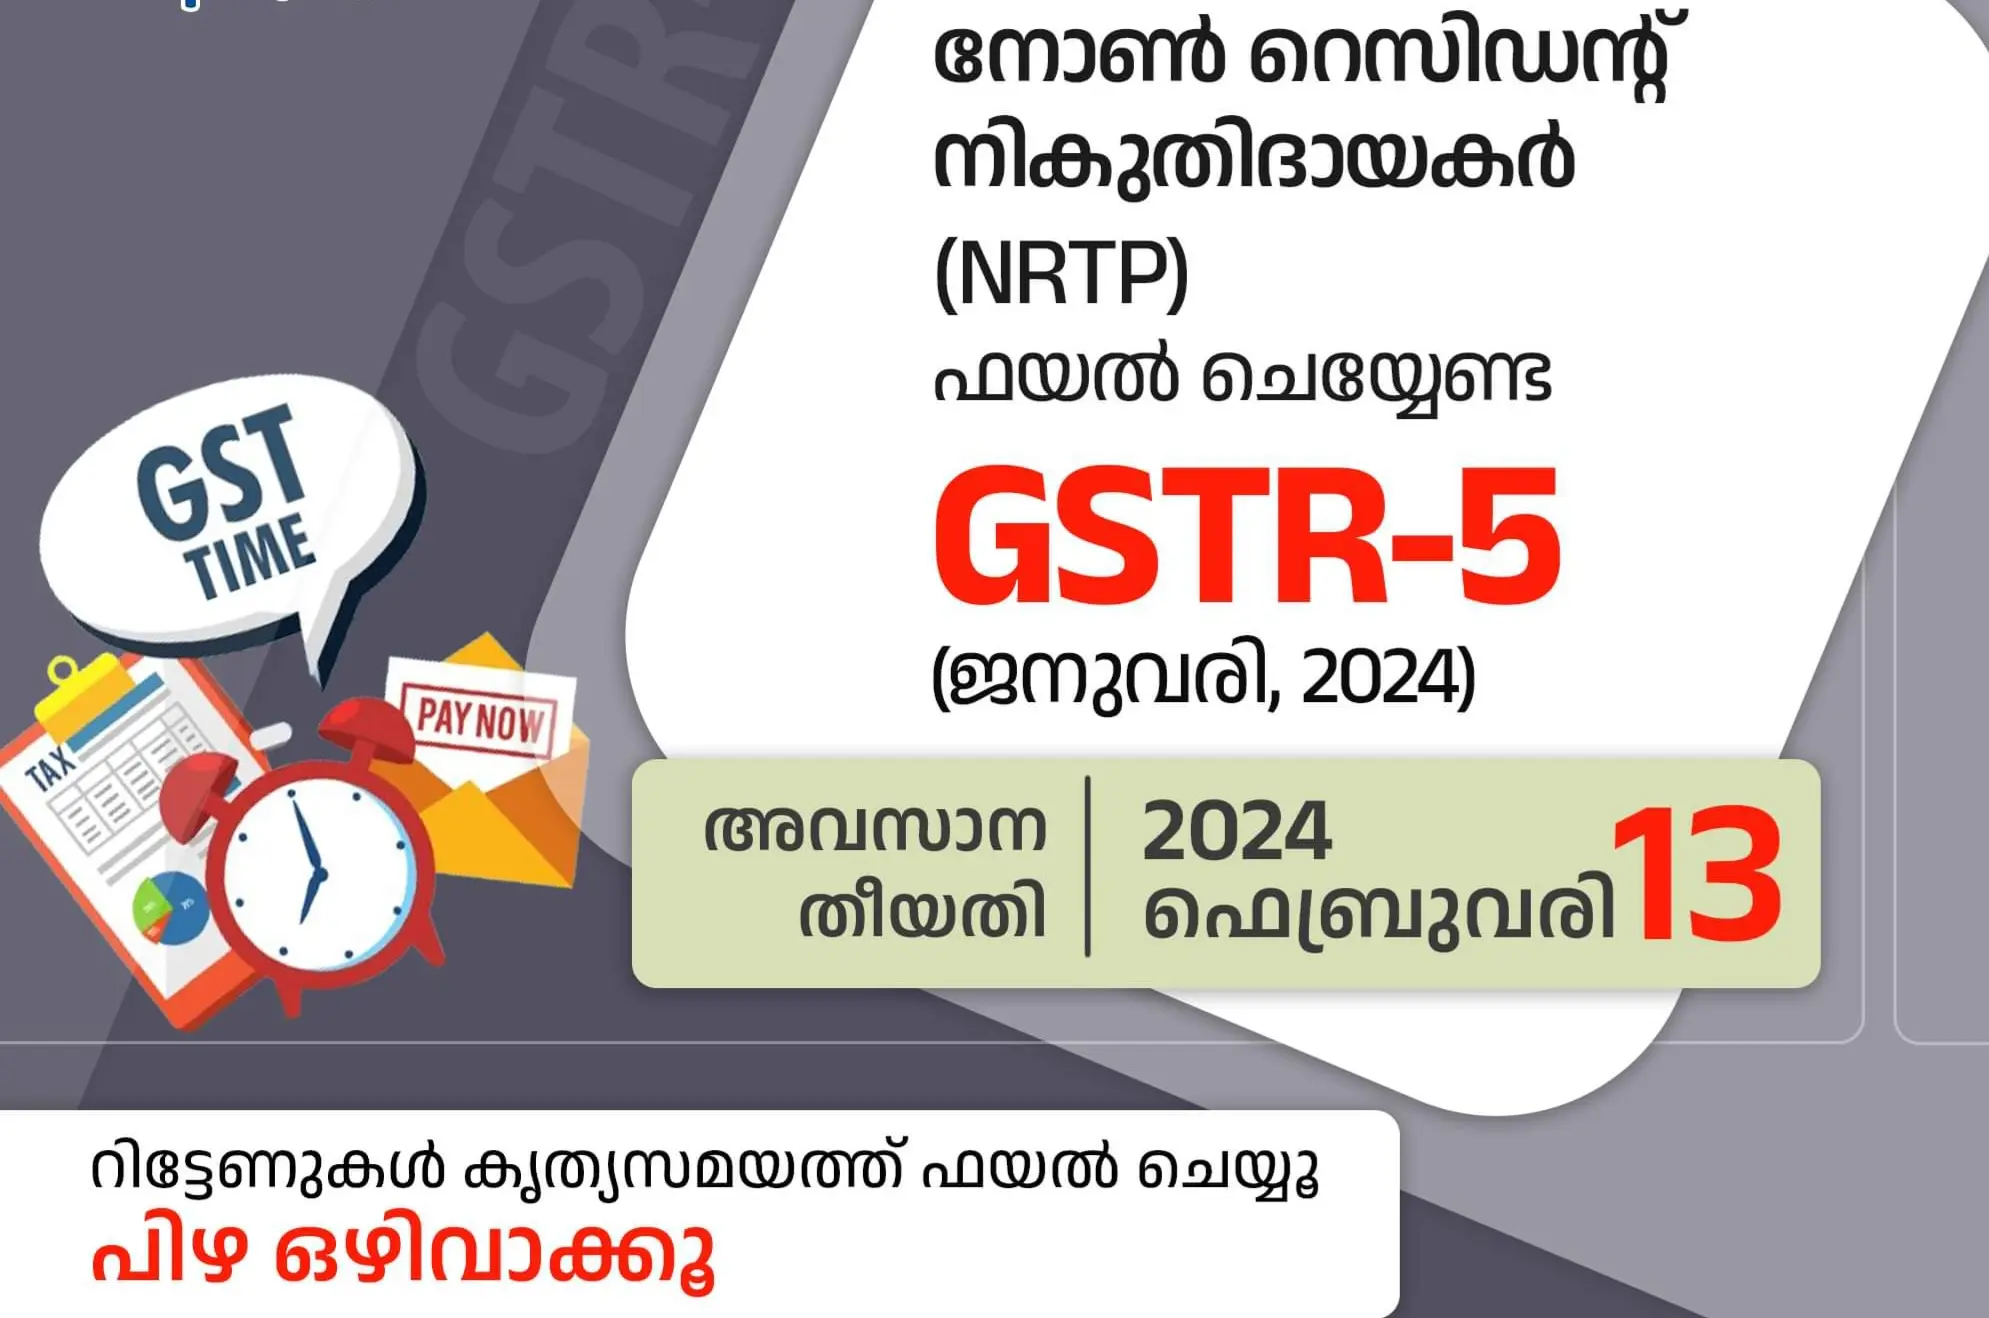 നോണ്‍ റെസിഡന്റ് നികുതിദായകര്‍ ( NRTP) ഫയല്‍ ചെയ്യേണ്ട GSTR-5 (ജനുവരി, 2024) അവസാന തീയതി 2024 ഫെബ്രുവരി 13